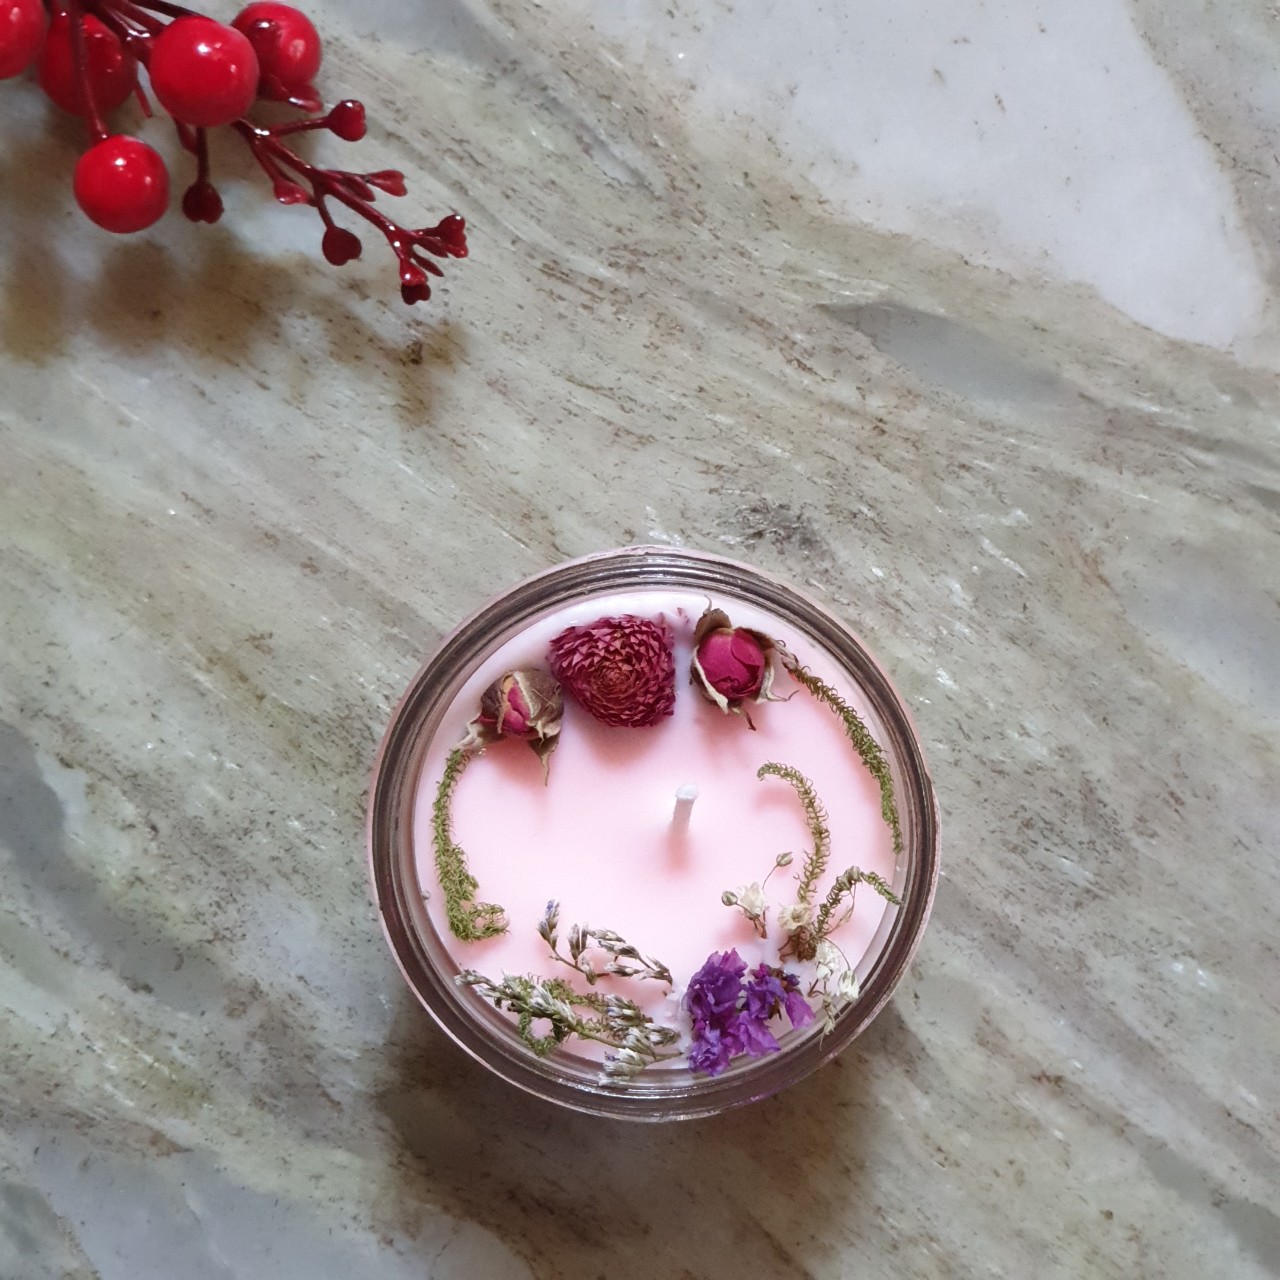 Combo 2 nến thơm tinh dầu 100g: 1 nến thơm tinh dầu hoa Anh đào, 1 nến thơm tinh dầu Lily, giúp thư giãn, thơm phòng khử mùi, handmade